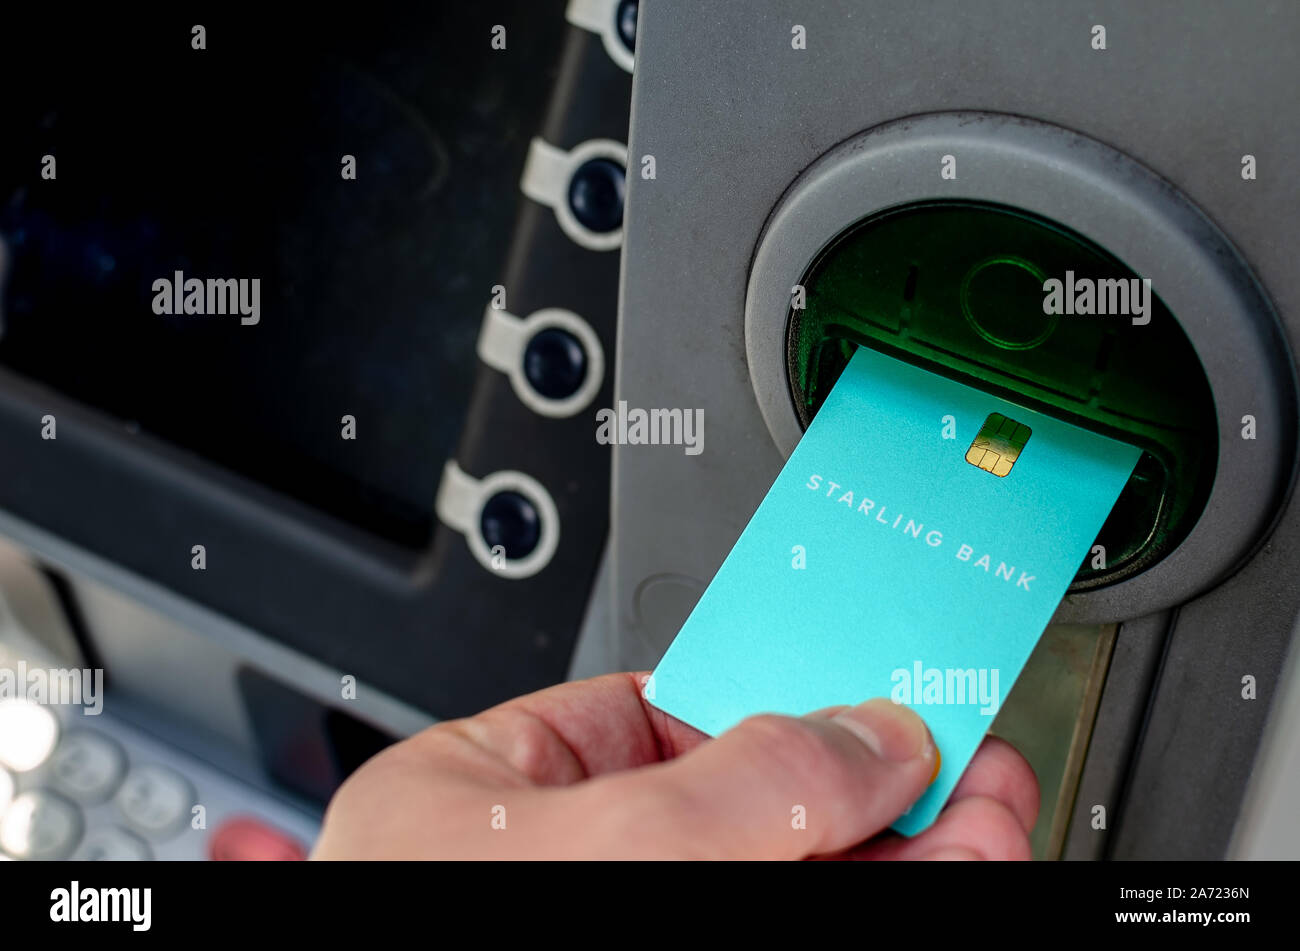 STARLING Bank Card im ATM eingefügt. Einer der ersten virtuellen Bank auf dem britischen fintech Markt. Stockfoto